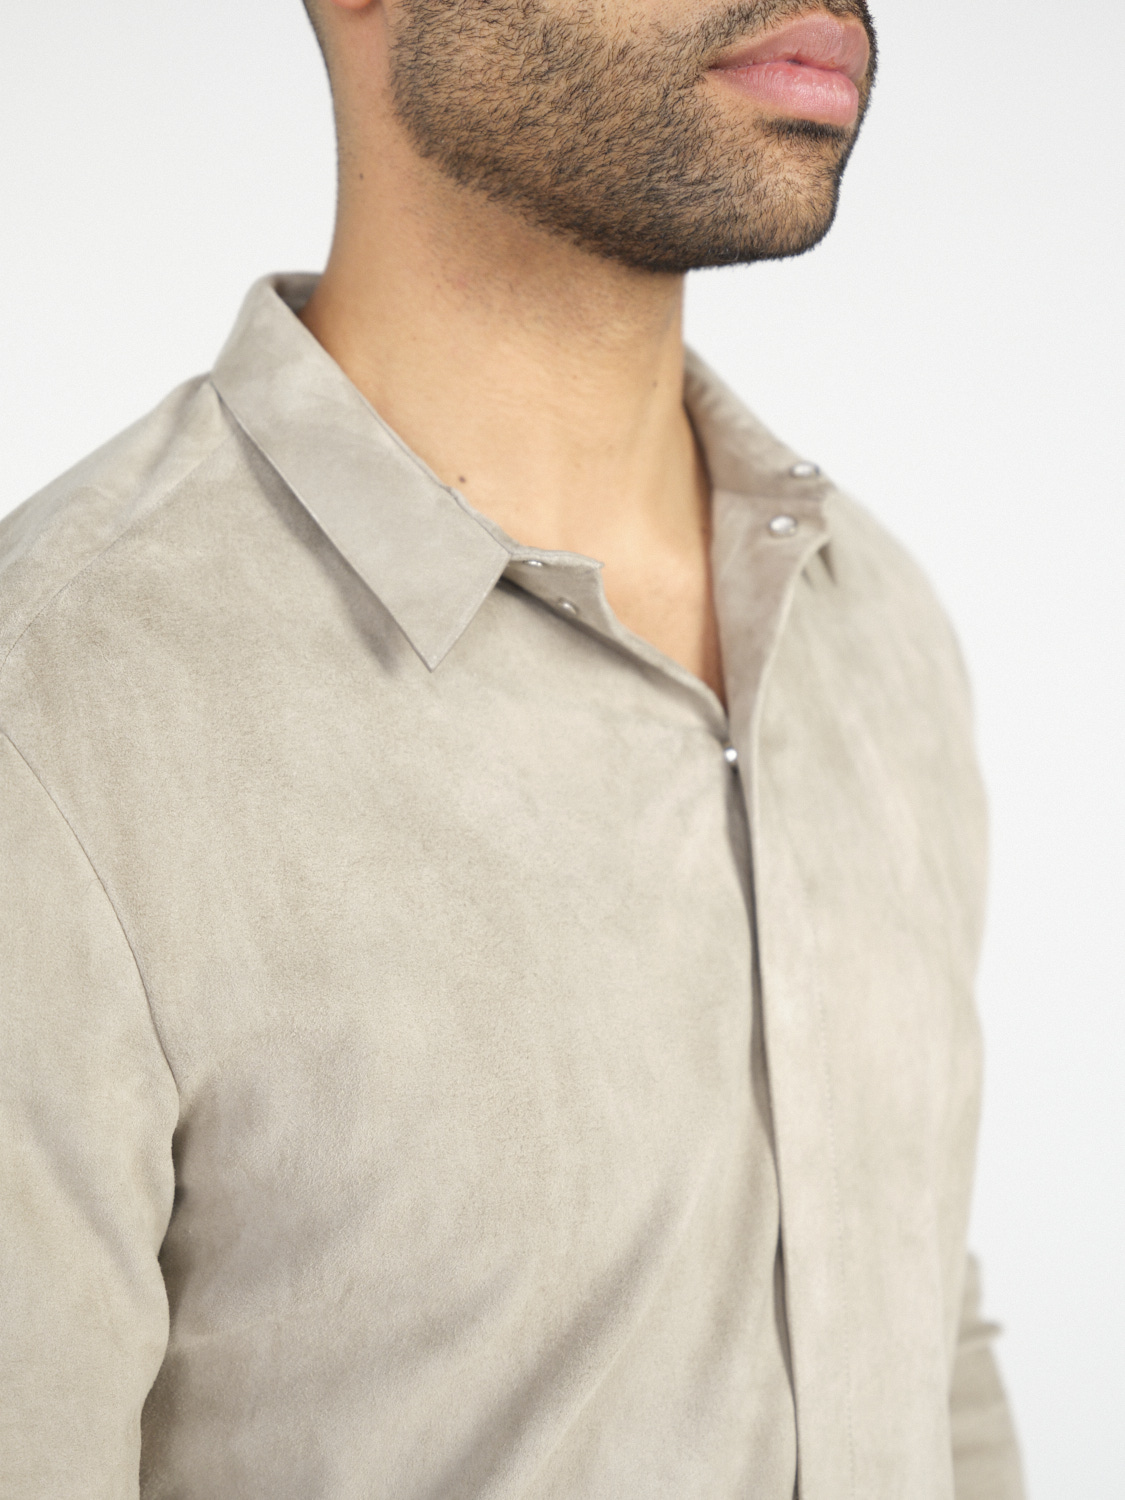 jitrois Wander – Stretchiges Hemd aus Veloursleder   crema 50